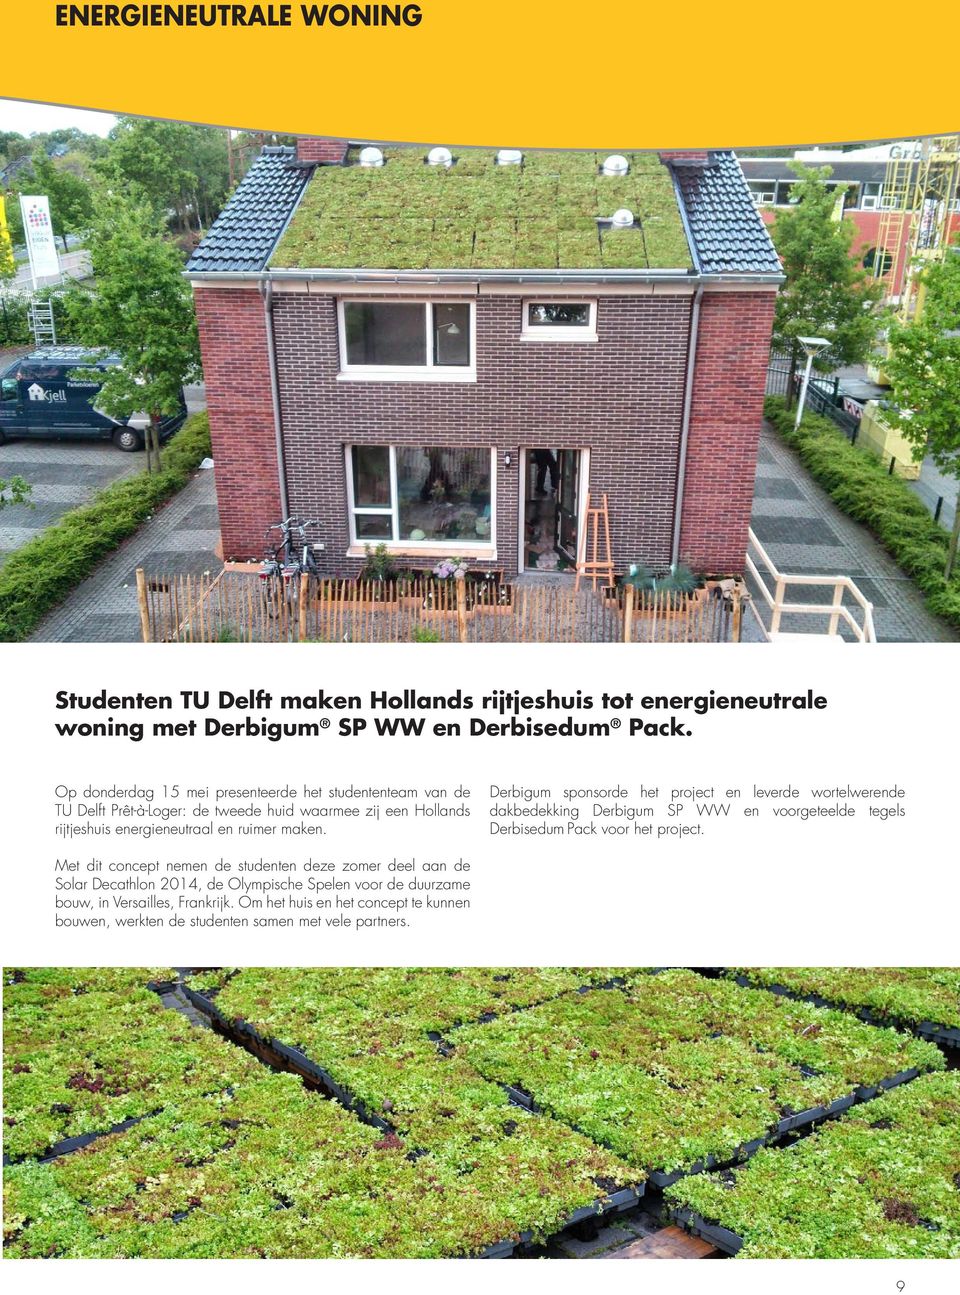 Derbigum sponsorde het project en leverde wortelwerende dakbedekking Derbigum SP WW en voorgeteelde tegels Derbisedum Pack voor het project.